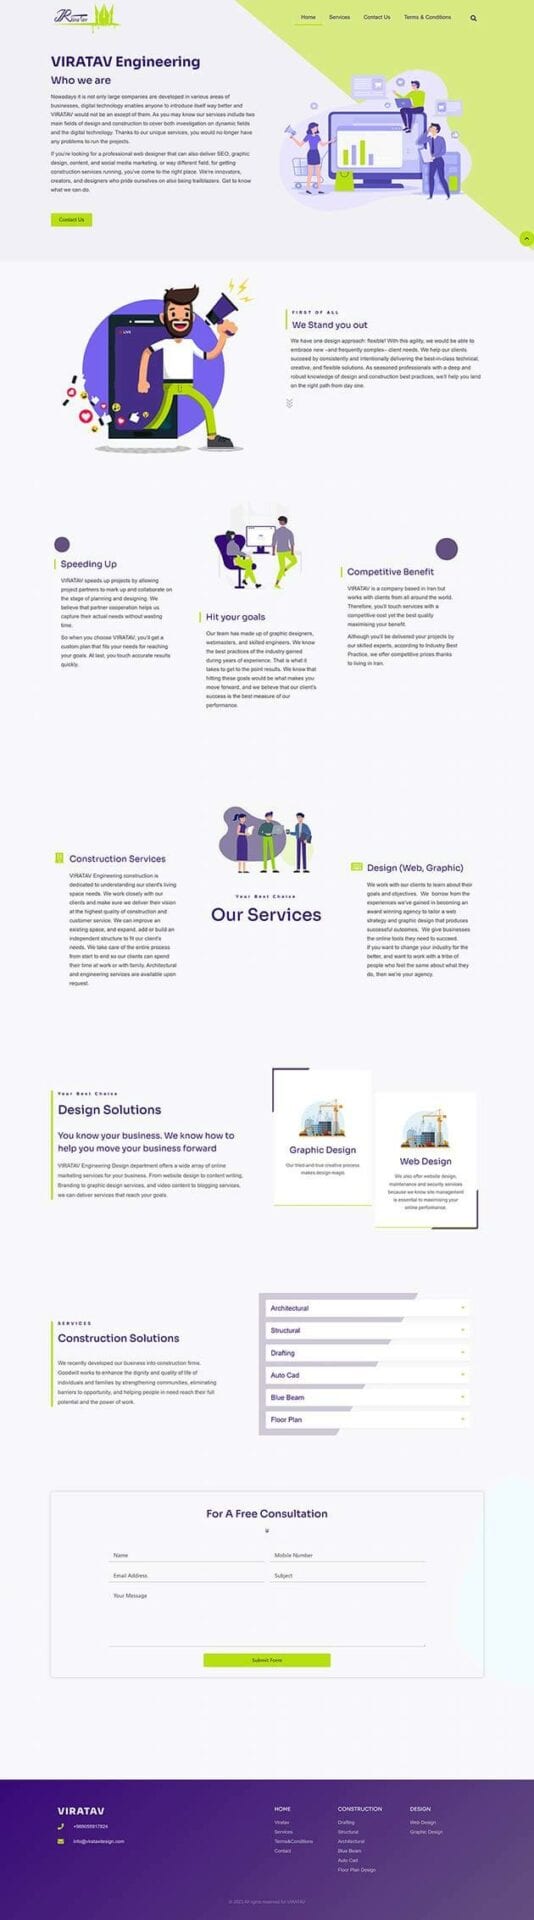 نمونه کار طراحی وبسایت خدمات مهندسی و طراحی توسط باروکا- تصویر 6